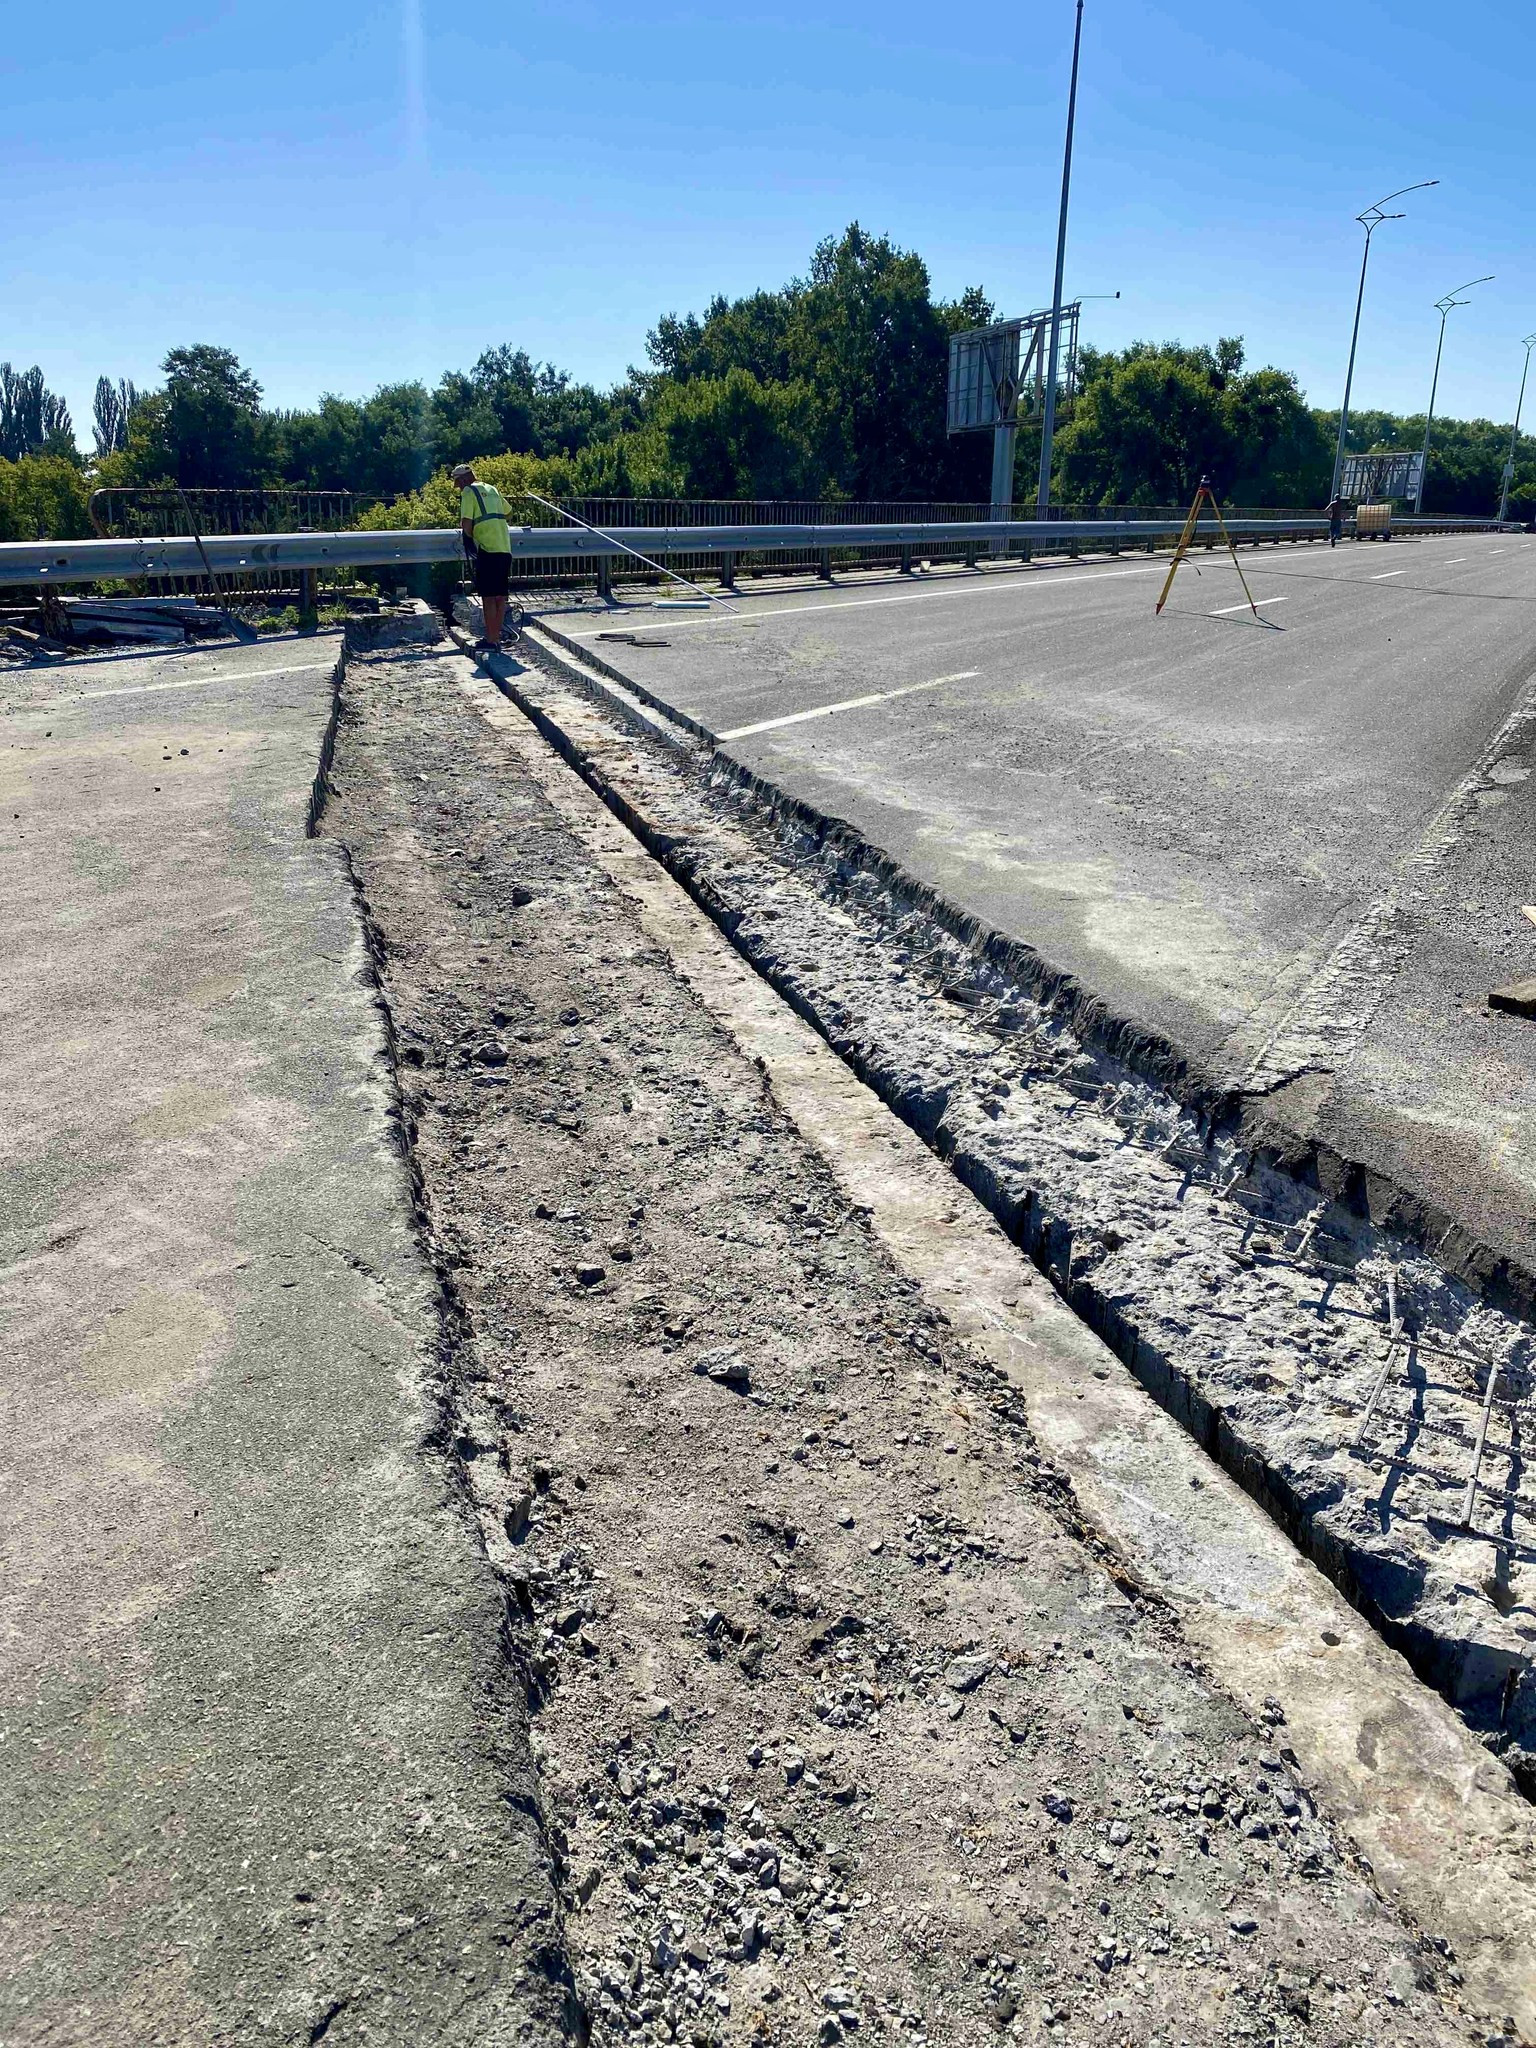 Цього року в межах експлуатаційного утримання буде відремонтовано 22 мости у Київській області - 6 - зображення